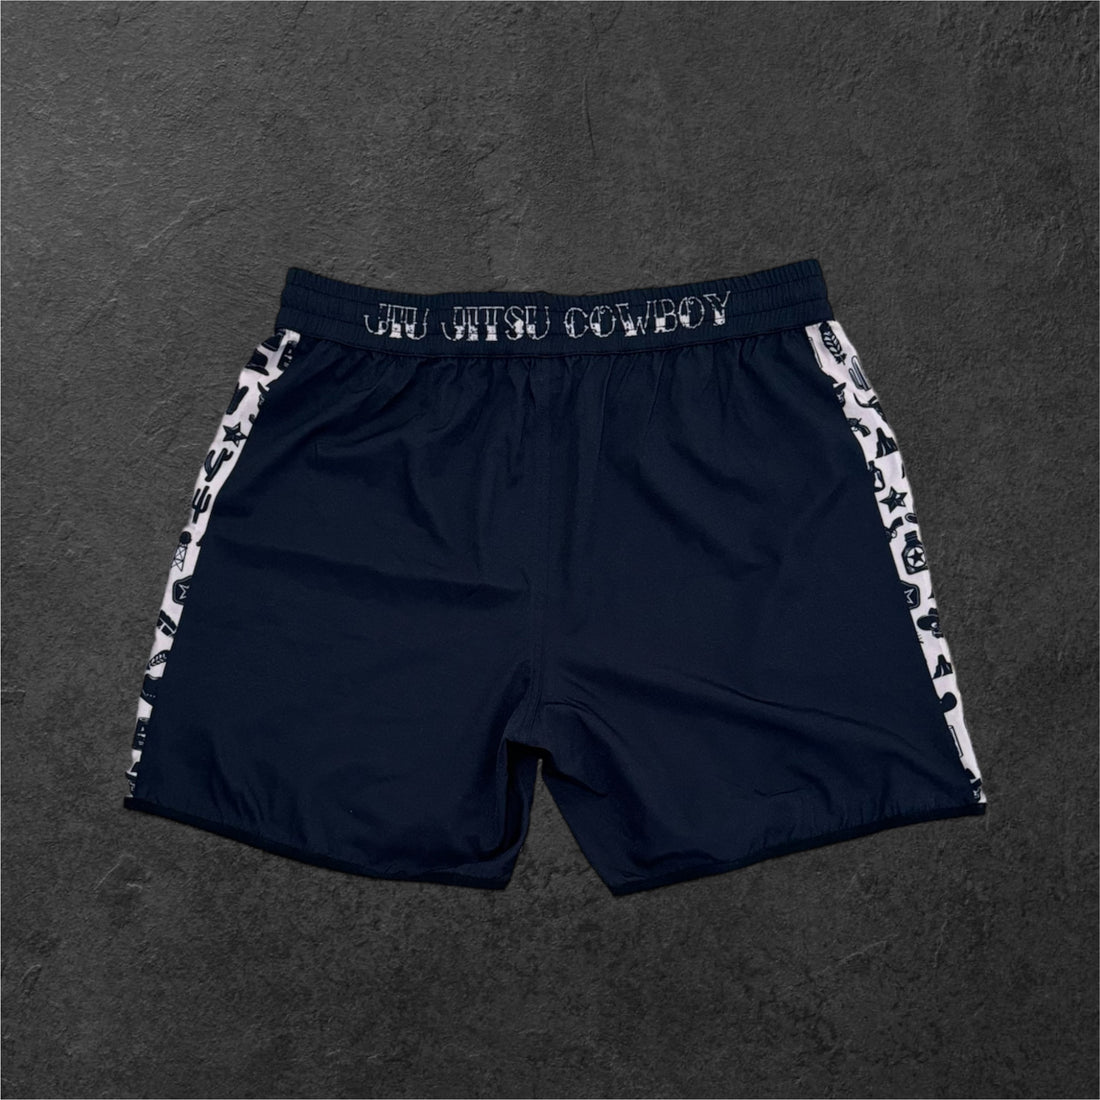 Buy Jiu Jitsu Cowboy Training Shorts - Premium Jiu Jitsu Shorts